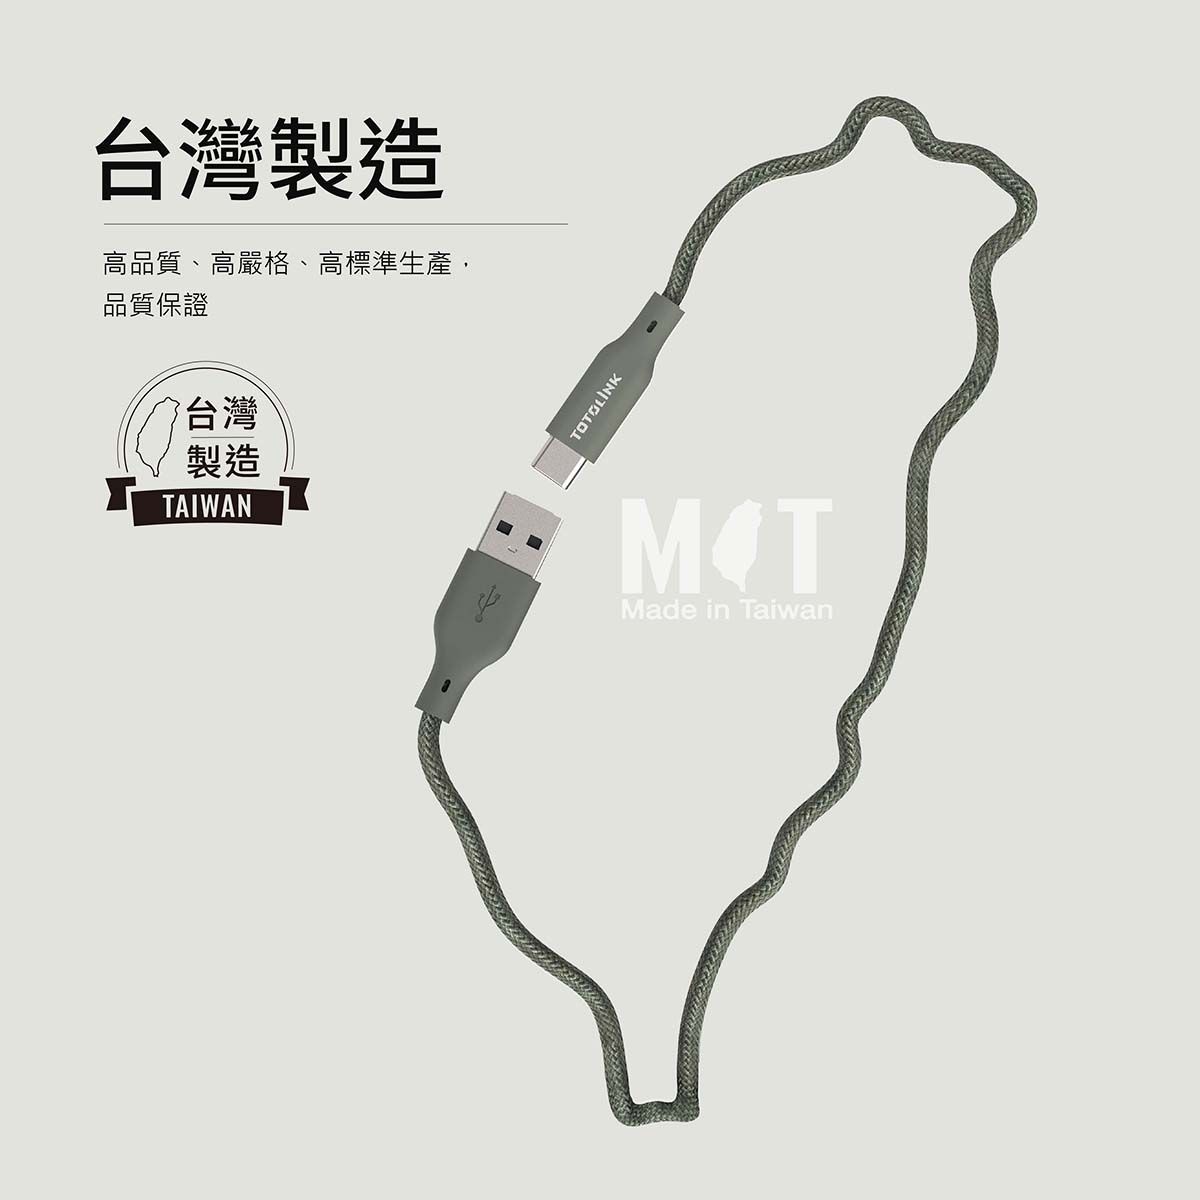 台灣製造高品質、高嚴格、高標準生產,品質保證台灣製造TAIWANMade in Taiwan